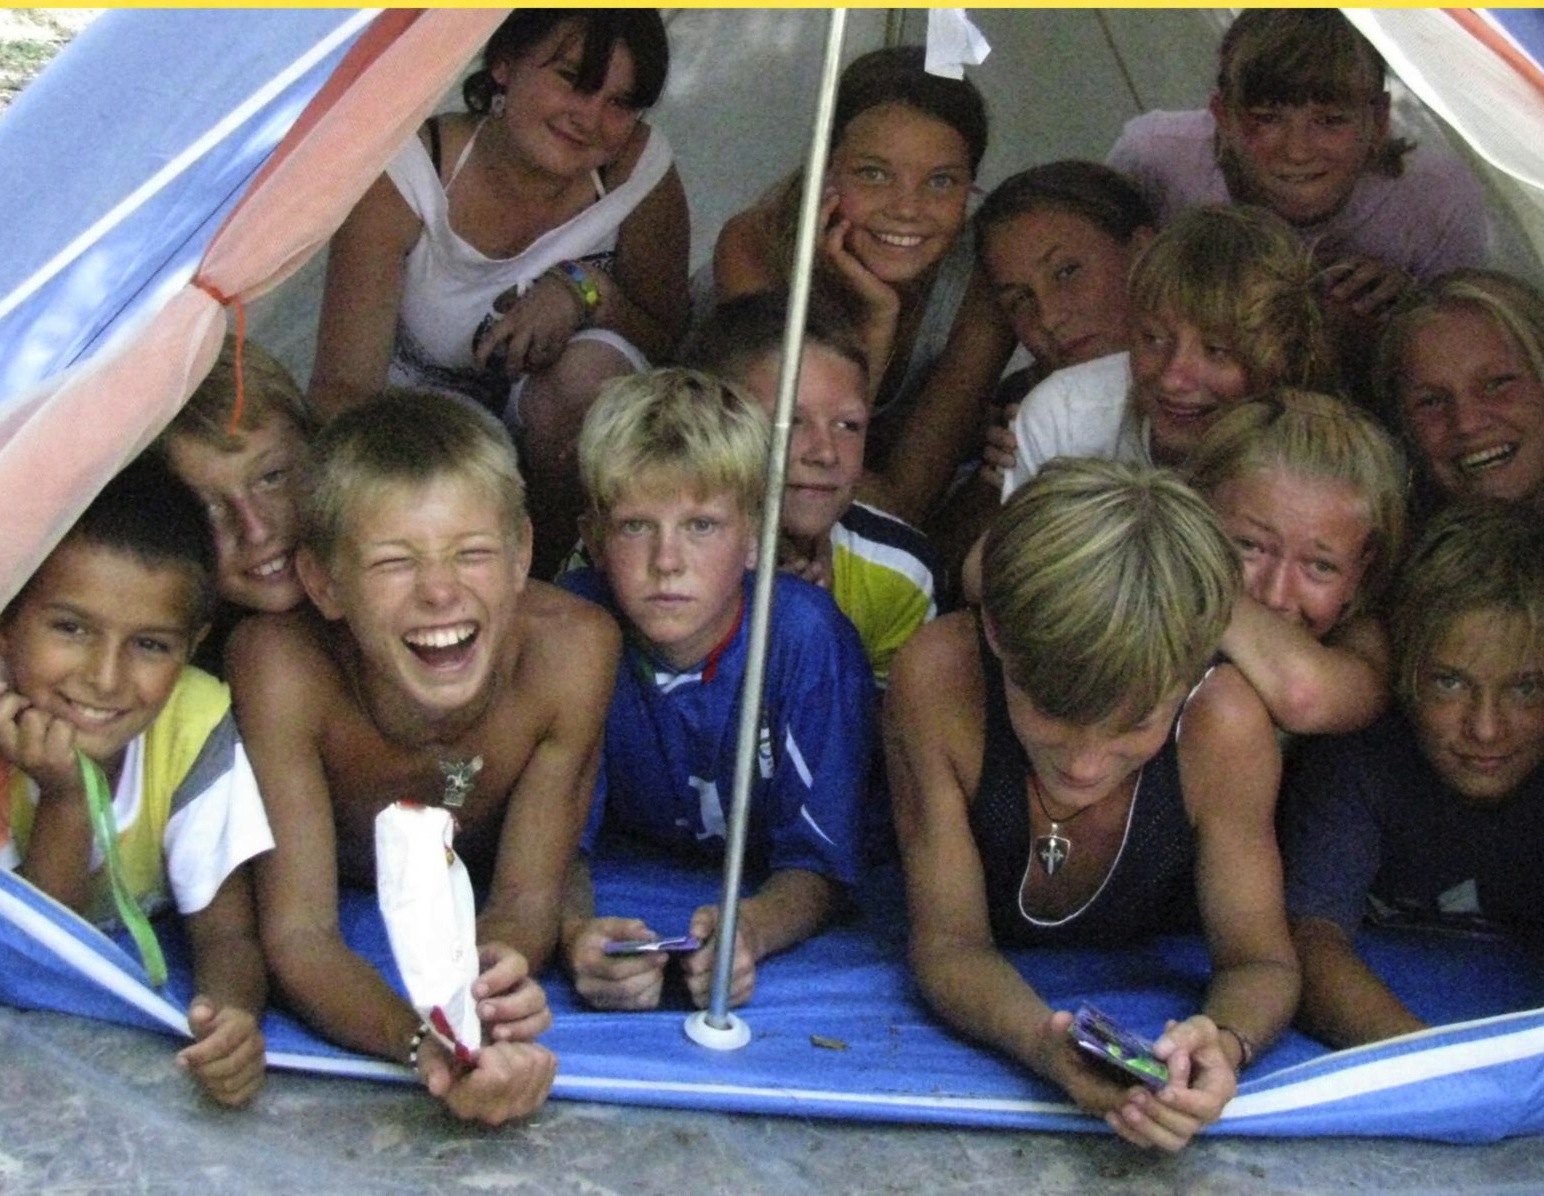 Trent'anni di accoglienza dei bambini bielorussi in un libro: "Un'avventura meravigliosa"